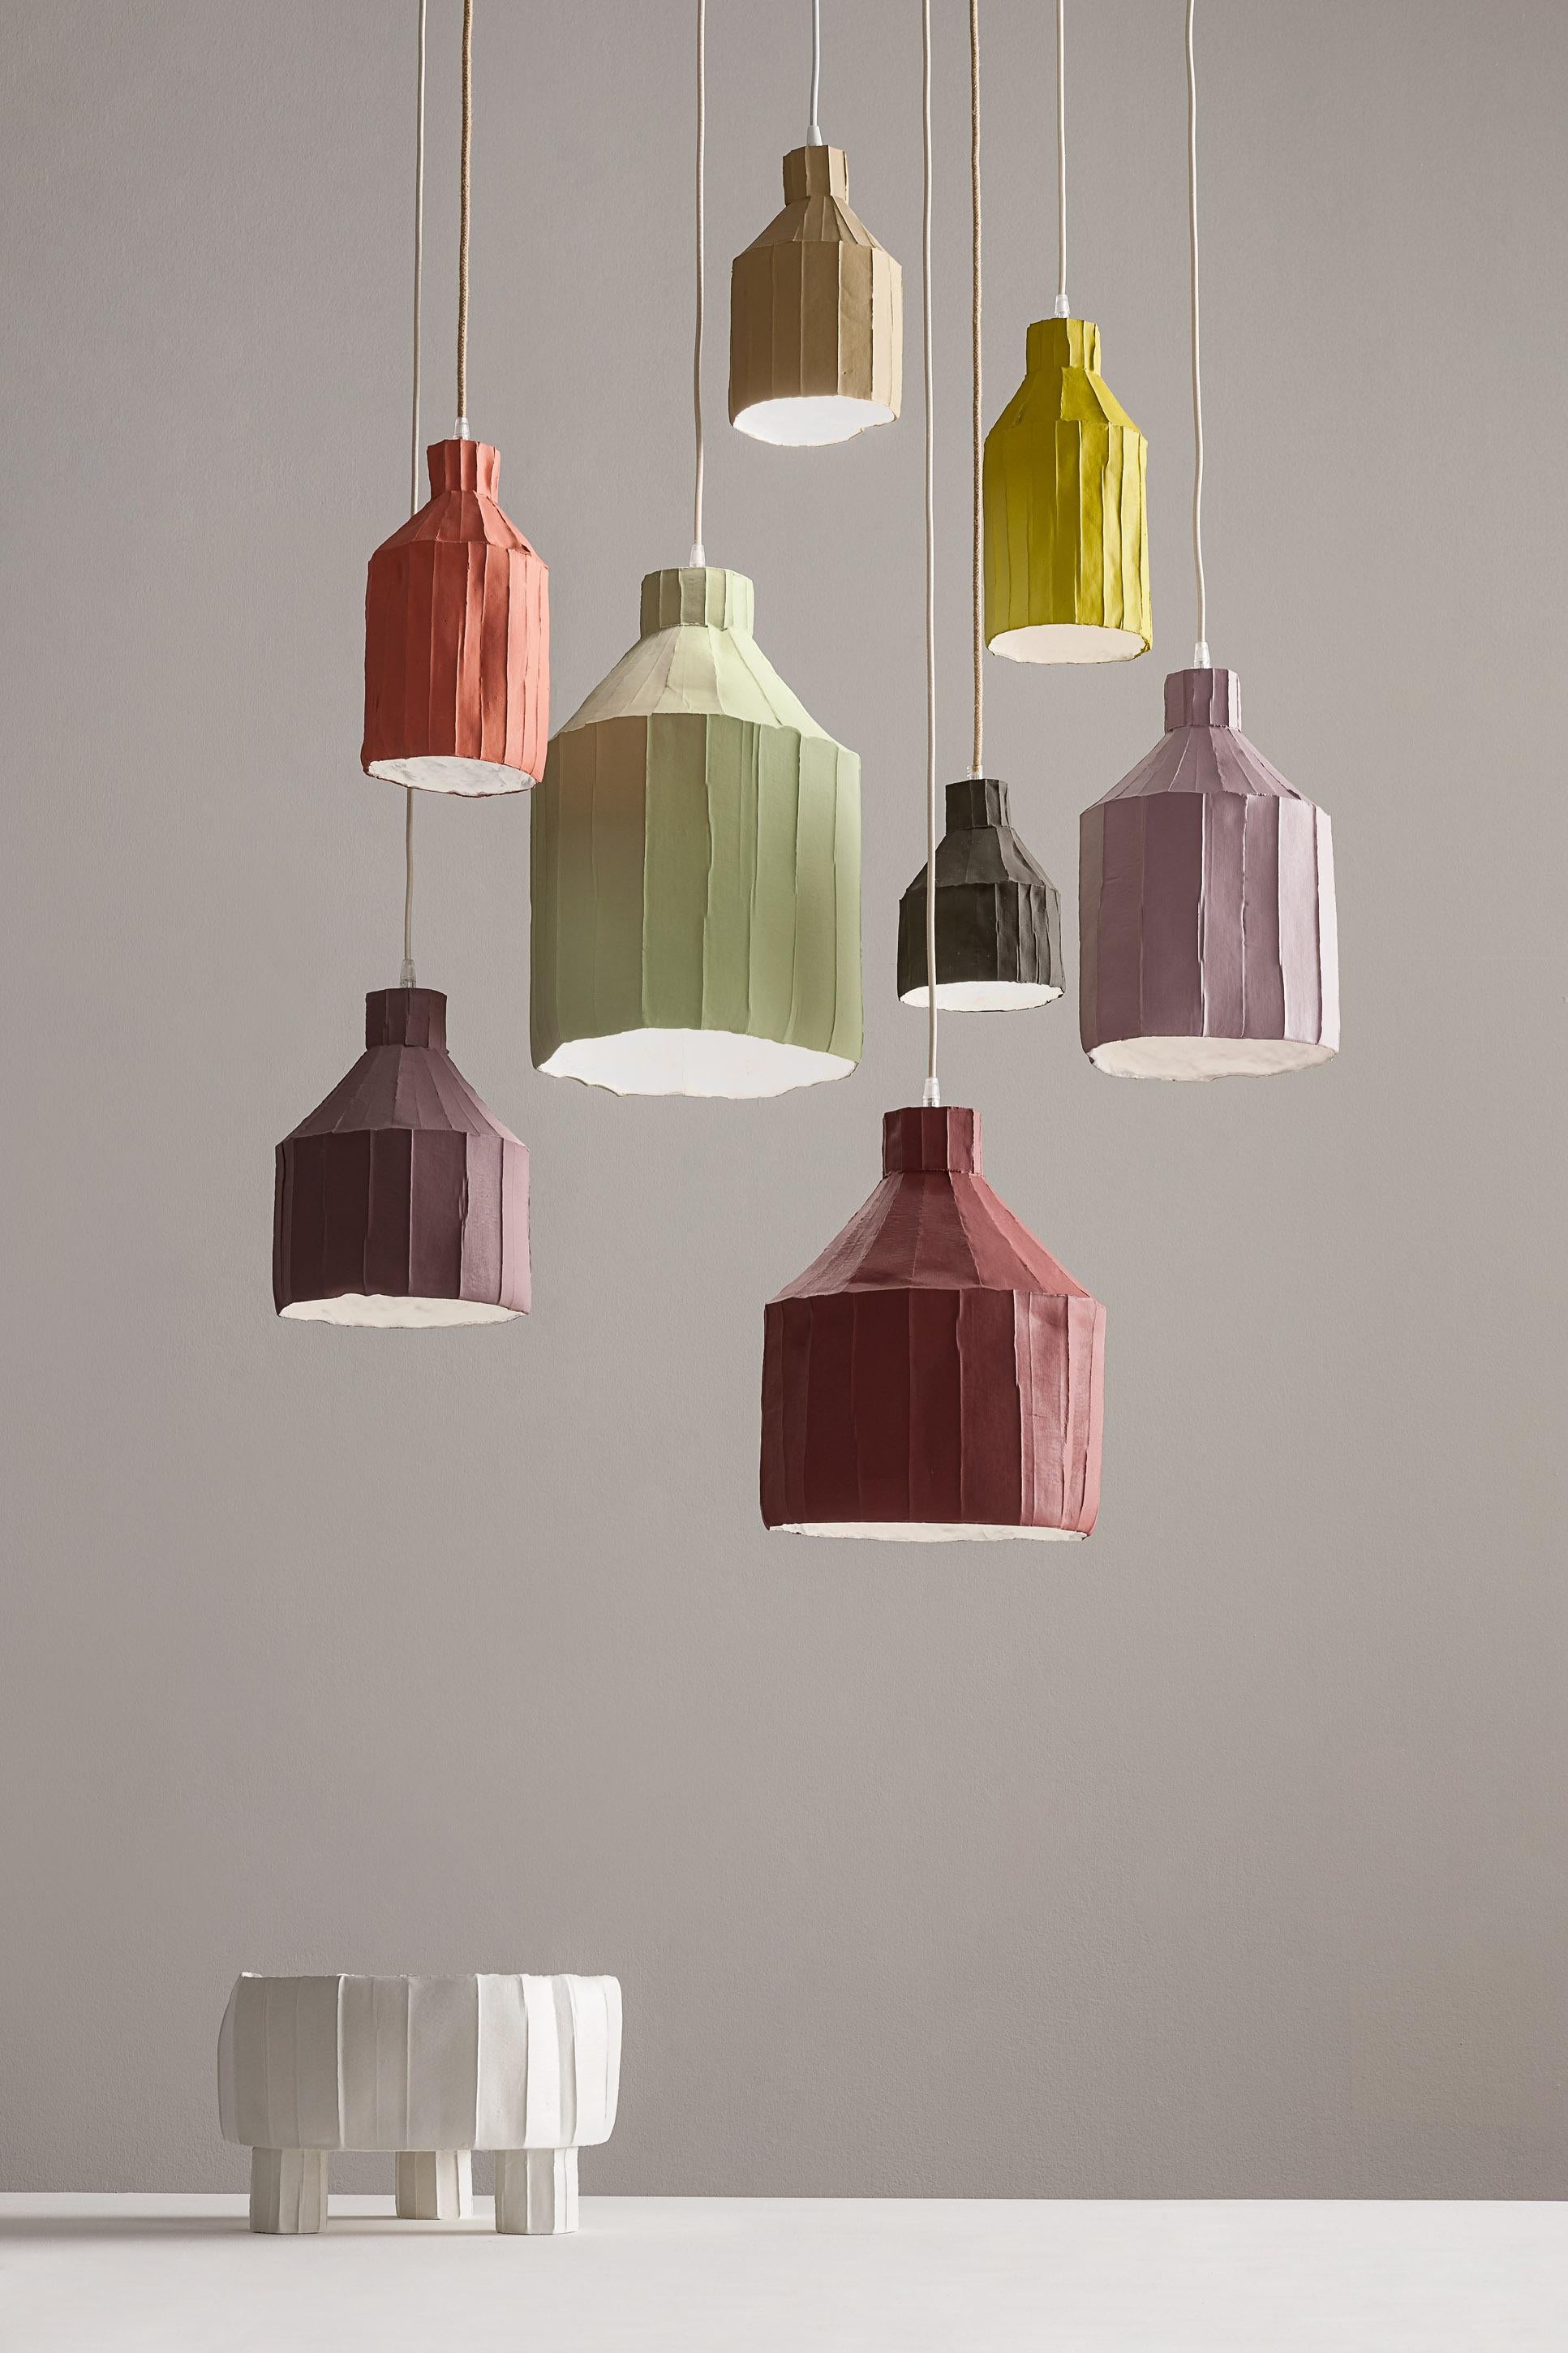 Diese raffinierte Lampe ist ein Beweis für das innovative Design und die hervorragende Handwerkskunst von Paola Paronettos Papier-Ton-Kunstwerken. Dieses vollständig von Hand gefertigte Stück wird mit Hilfe von Paper Clay zum Leben erweckt, einer